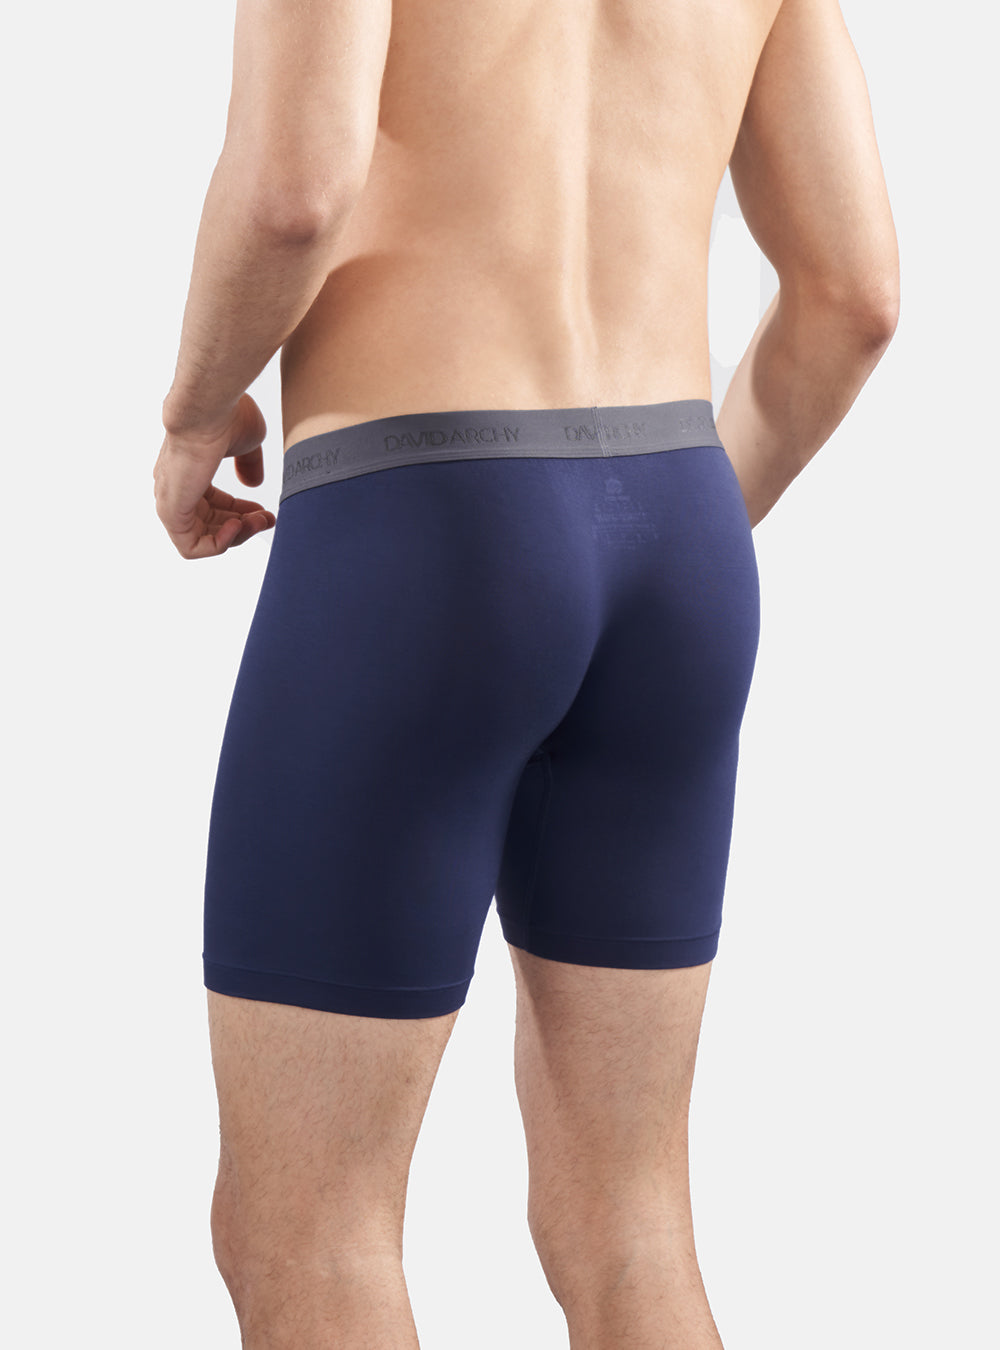 Boxer Briefs Std Bamboo-Pouch Underwear for Men-REG Patented Support –  athletic-underwear